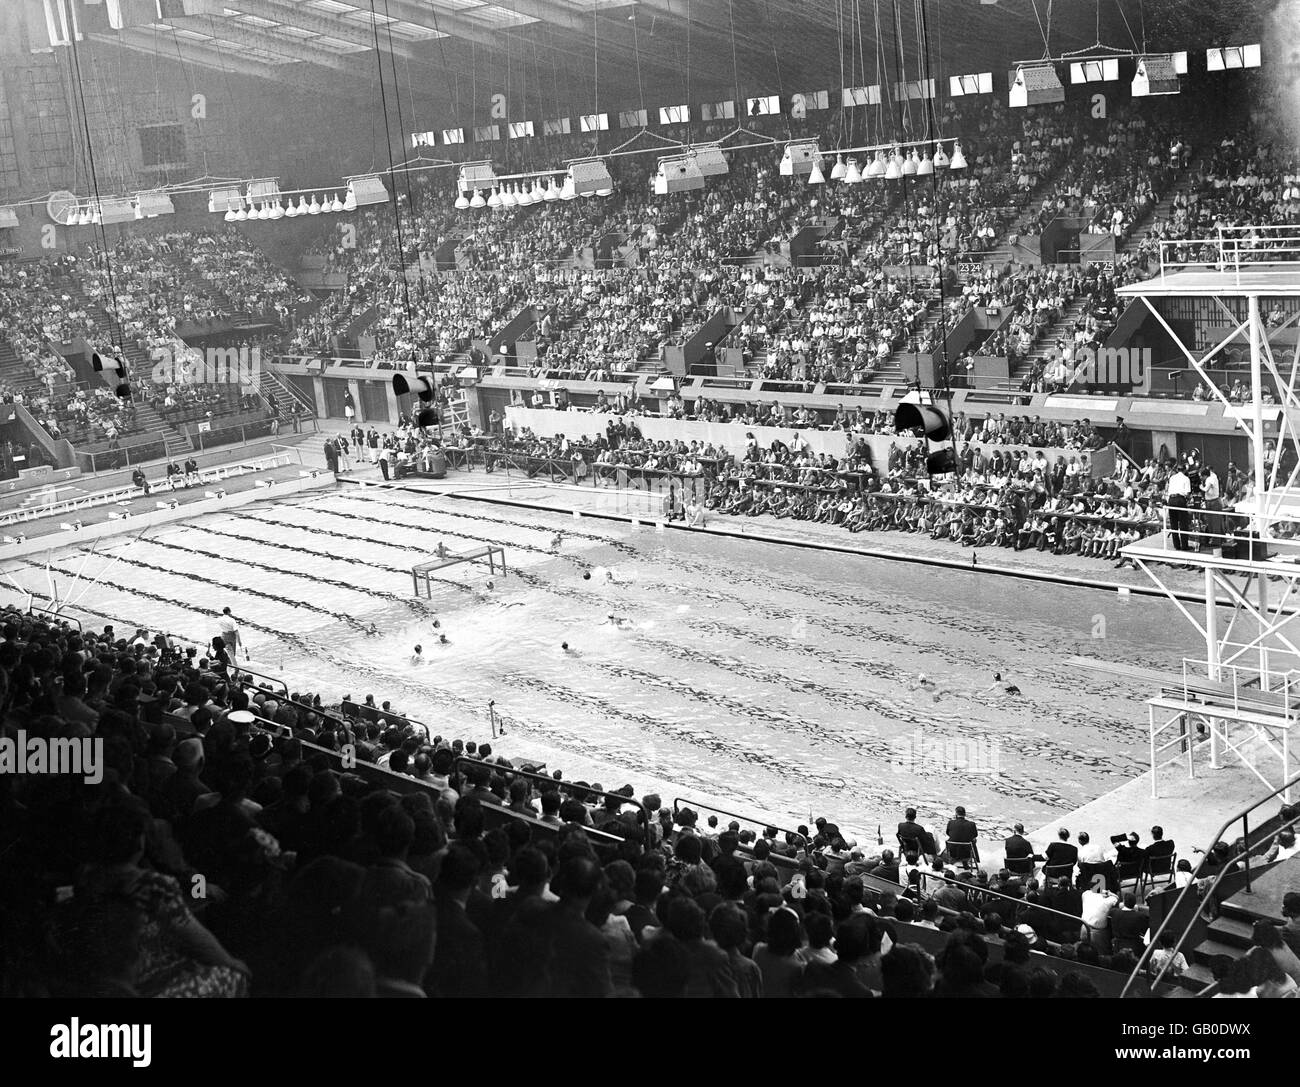 Jeux Olympiques de Londres 1948 - Water Polo - Empire Pool.Suède attaquant le but français pendant un match dans le groupe final de décider de la 5ème à 8ème place. Banque D'Images